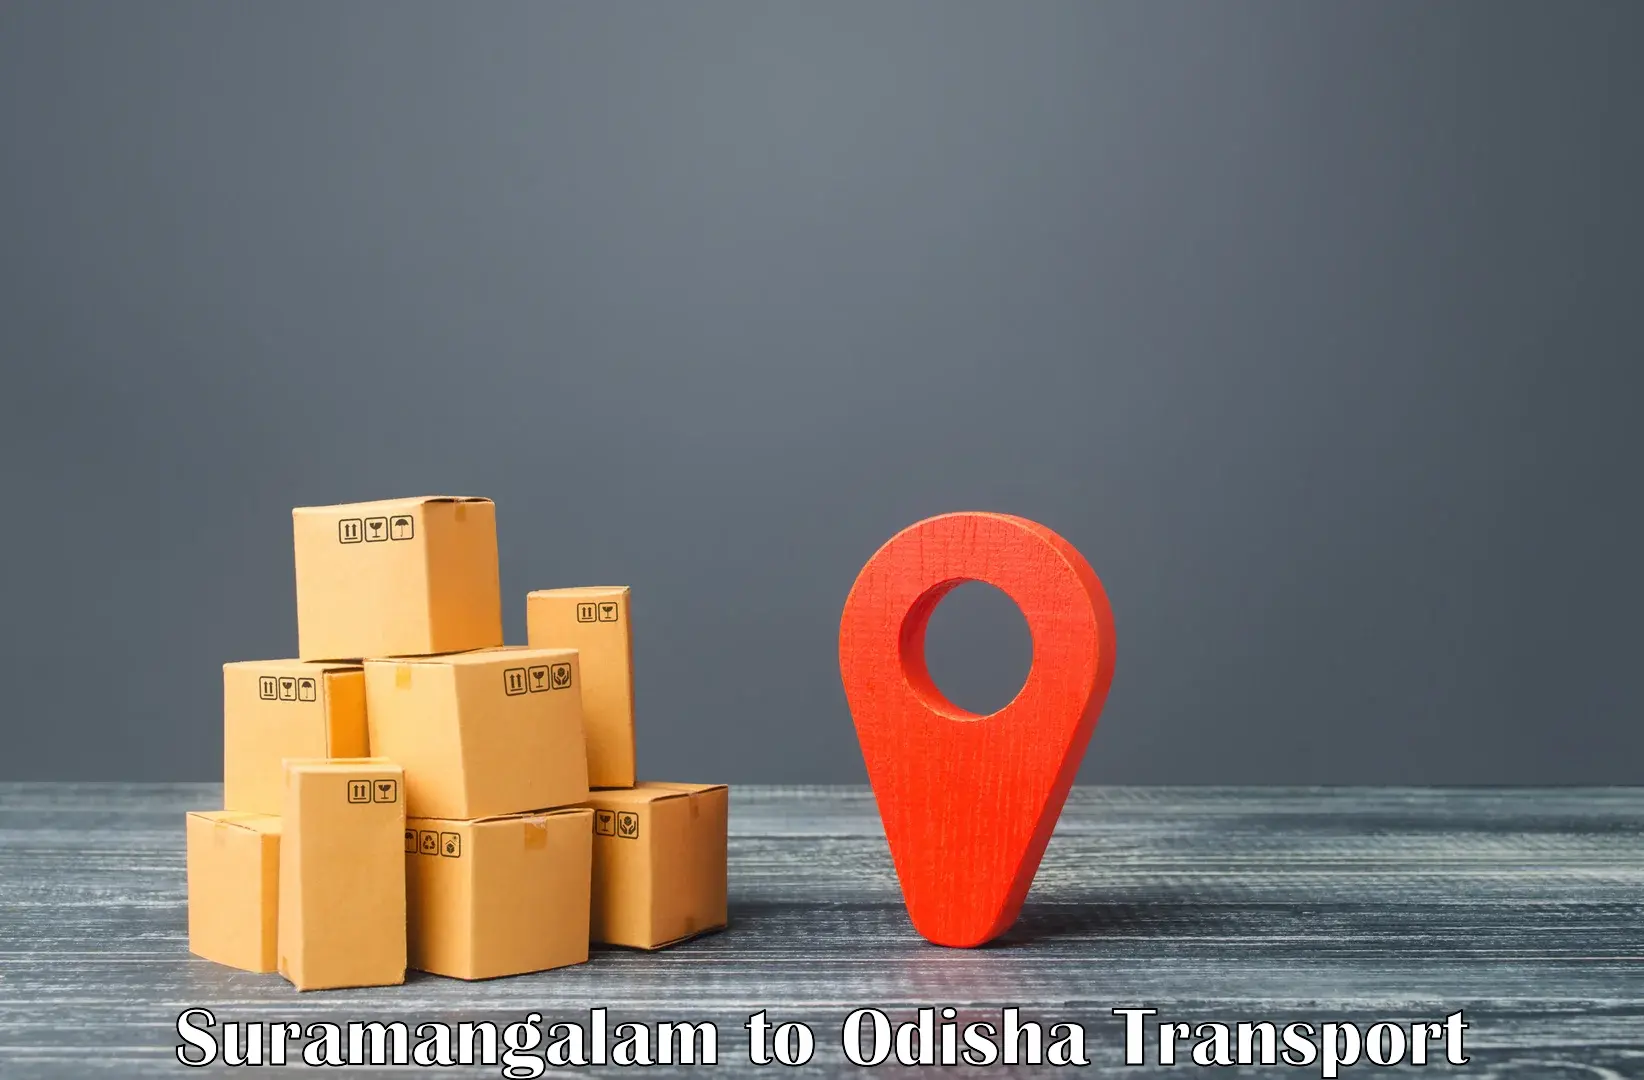 Furniture transport service Suramangalam to Sukinda